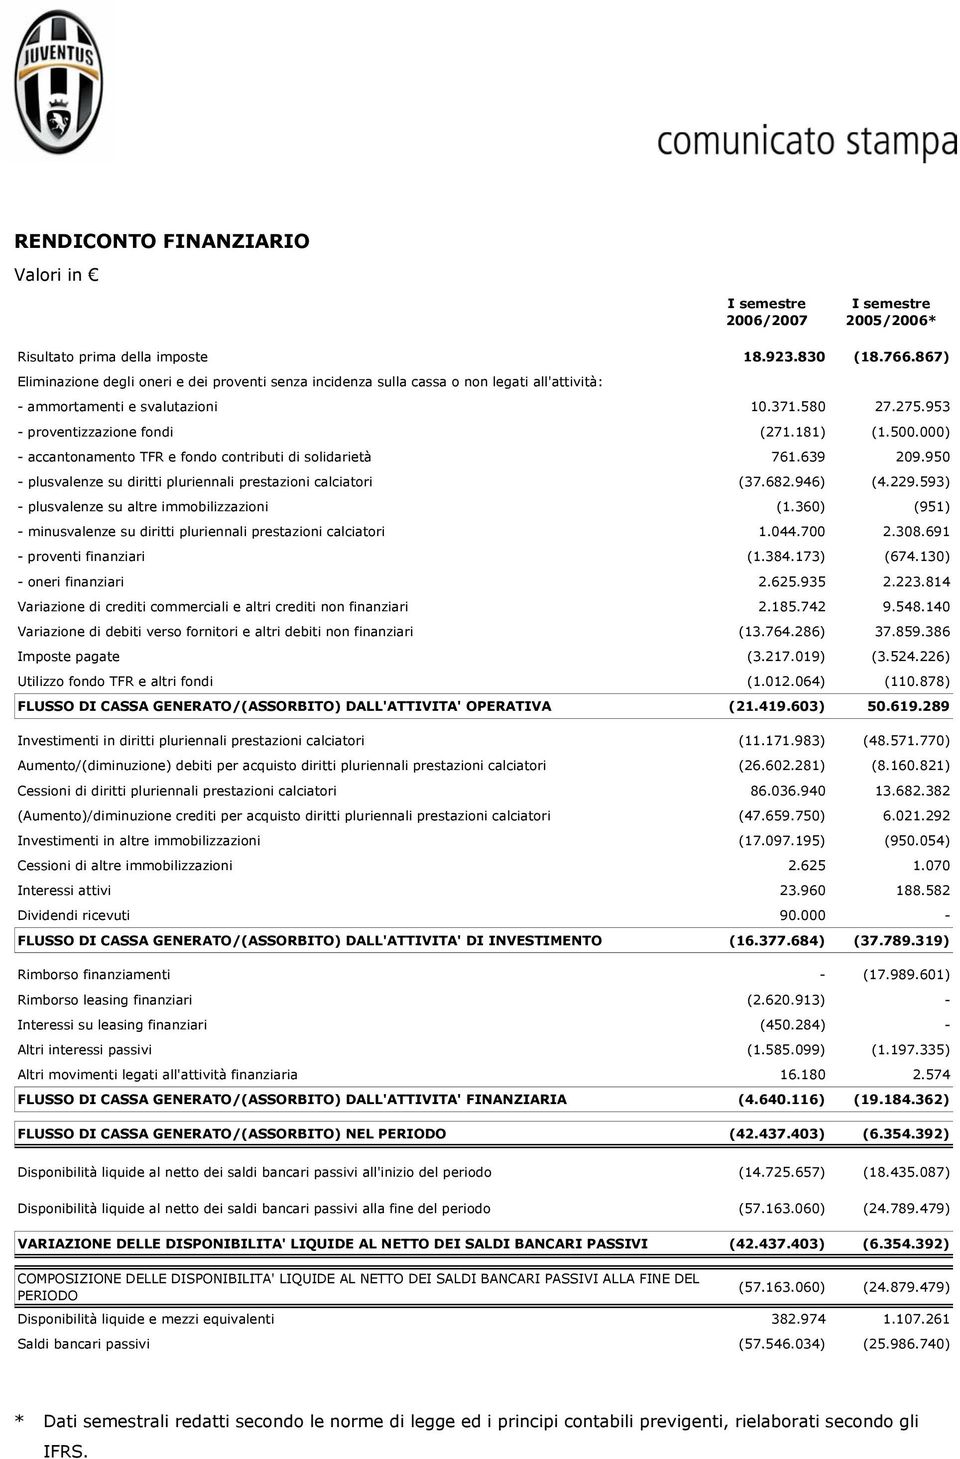 000) - accantonamento TFR e fondo contributi di solidarietà 761.639 209.950 - plusvalenze su diritti pluriennali prestazioni calciatori (37.682.946) (4.229.